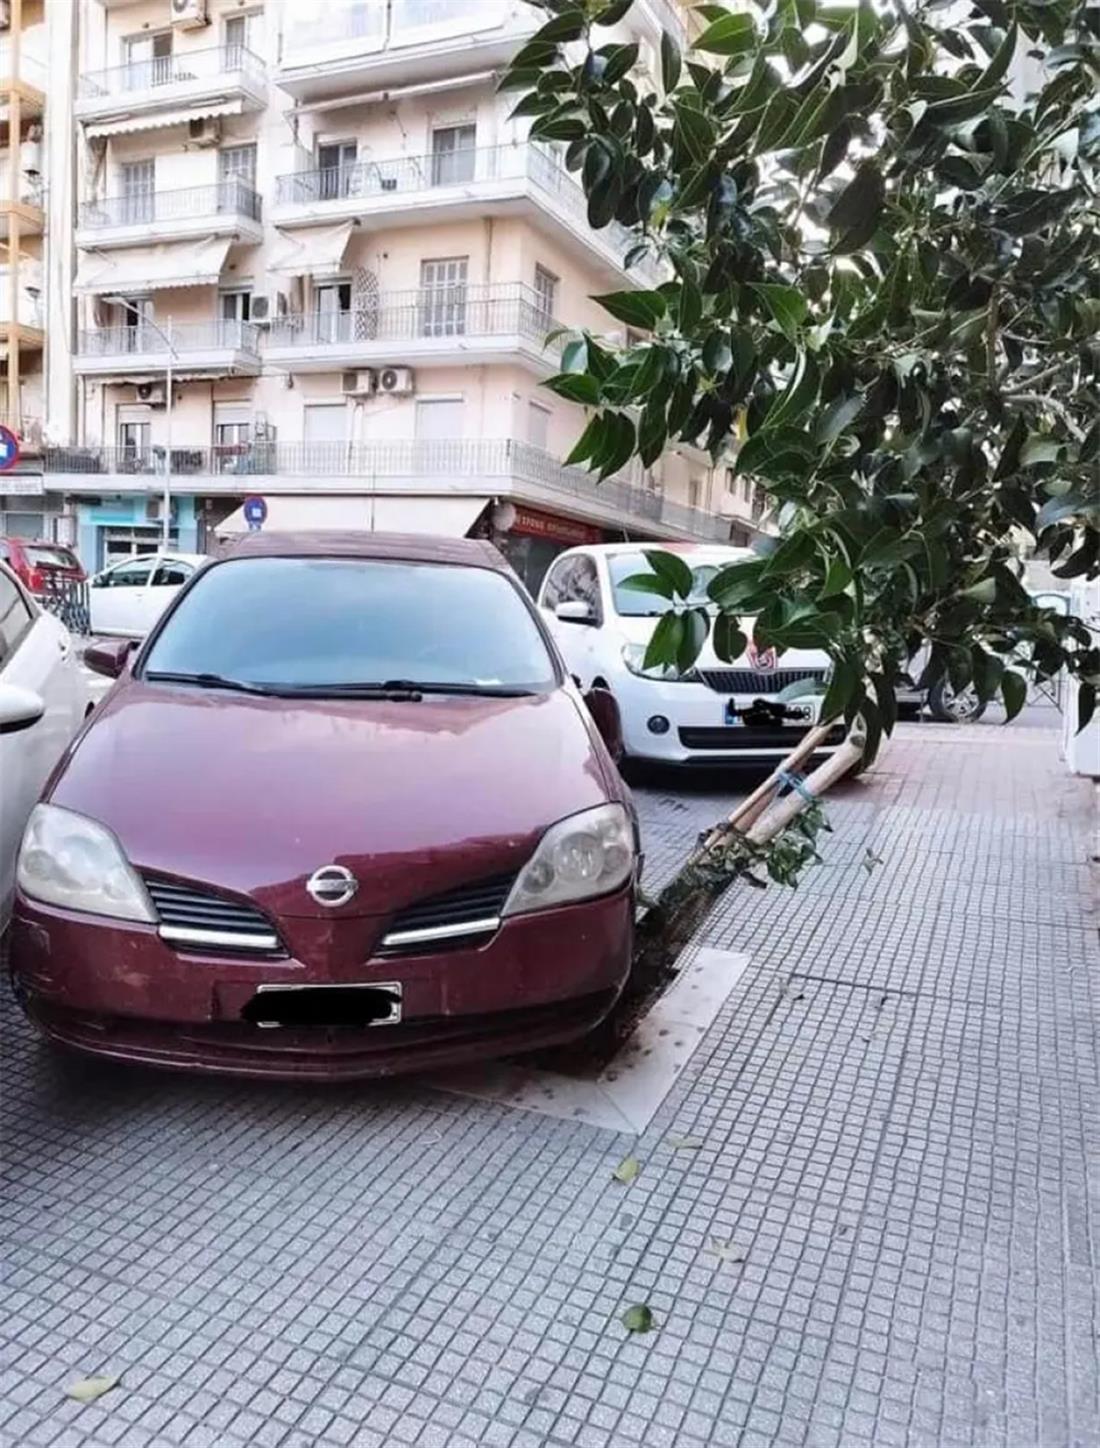 Θεσσαλονίκη - παρκάρισμα - κορμός δέντρου